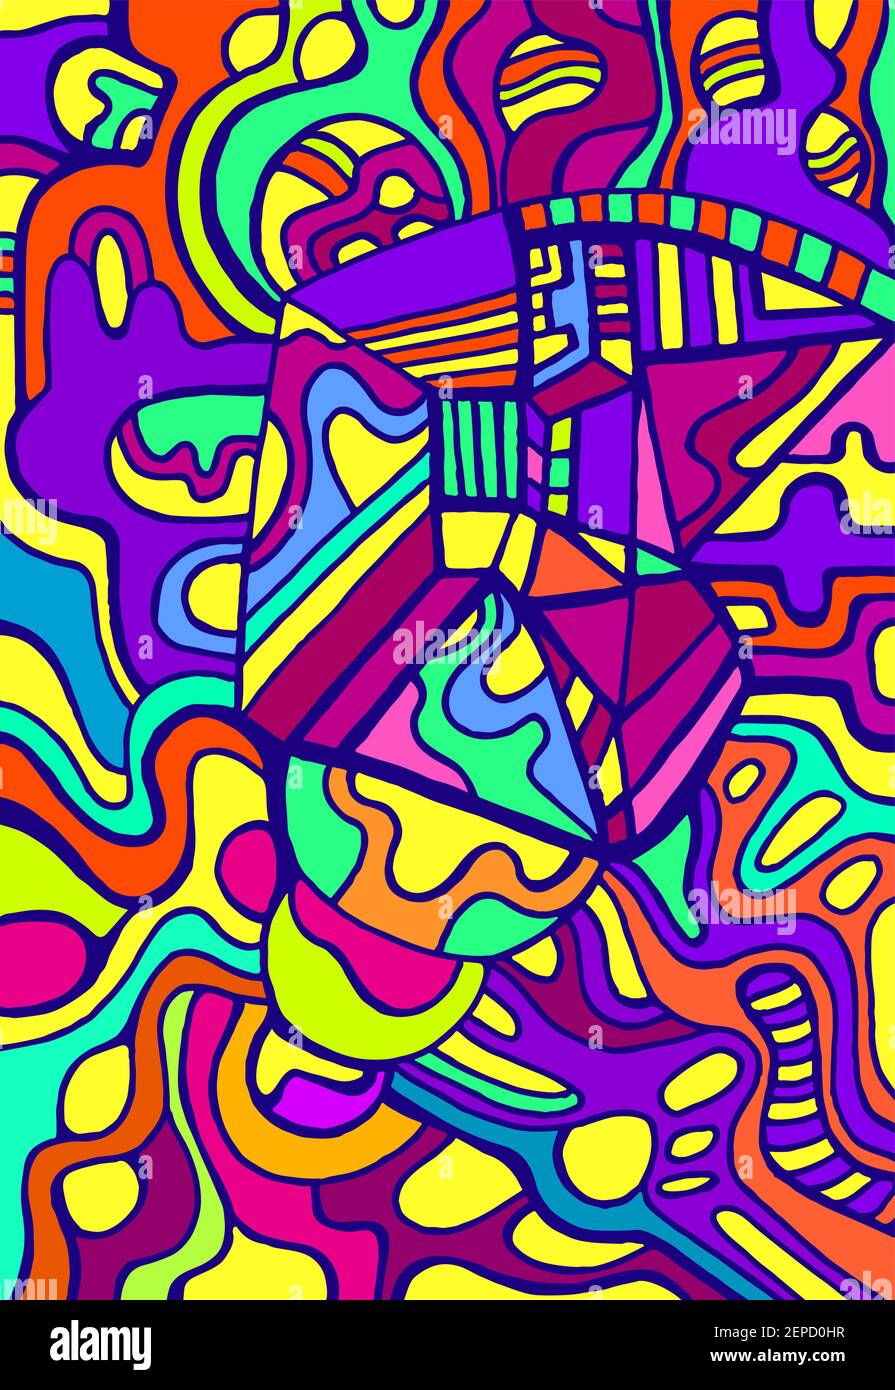 Motif de caniche surréaliste coloré et psychédélique vif. Motifs abstraits de couleurs arc-en-ciel, labyrinthe d'ornements. Illustration de Vecteur